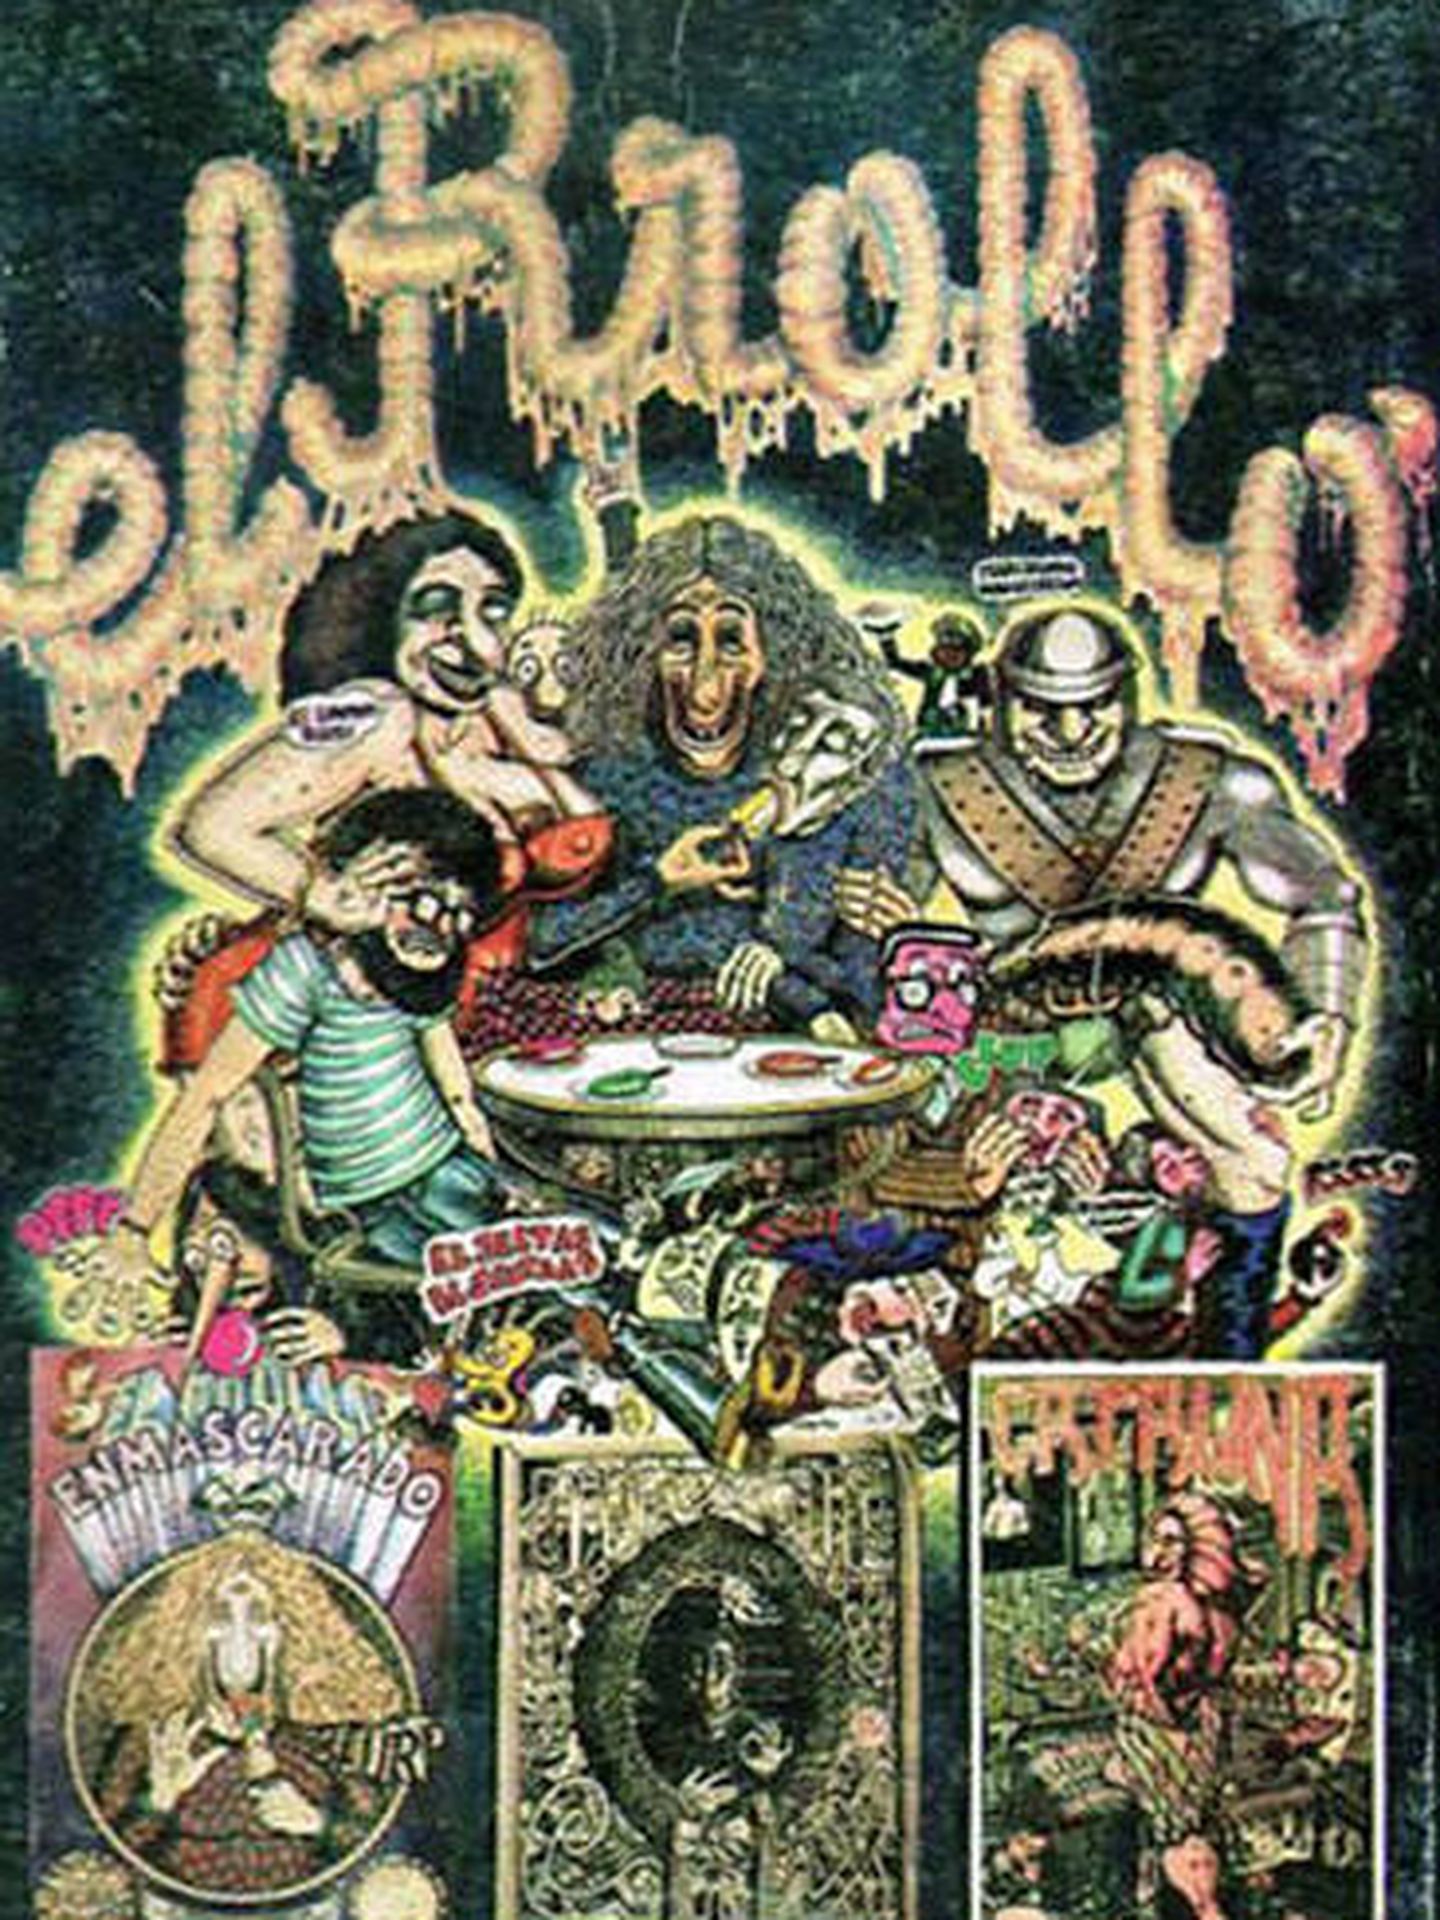 'El Rrollo Enmascarado' de Nazario Luque, Javier Mariscal, Farry y Pepichek